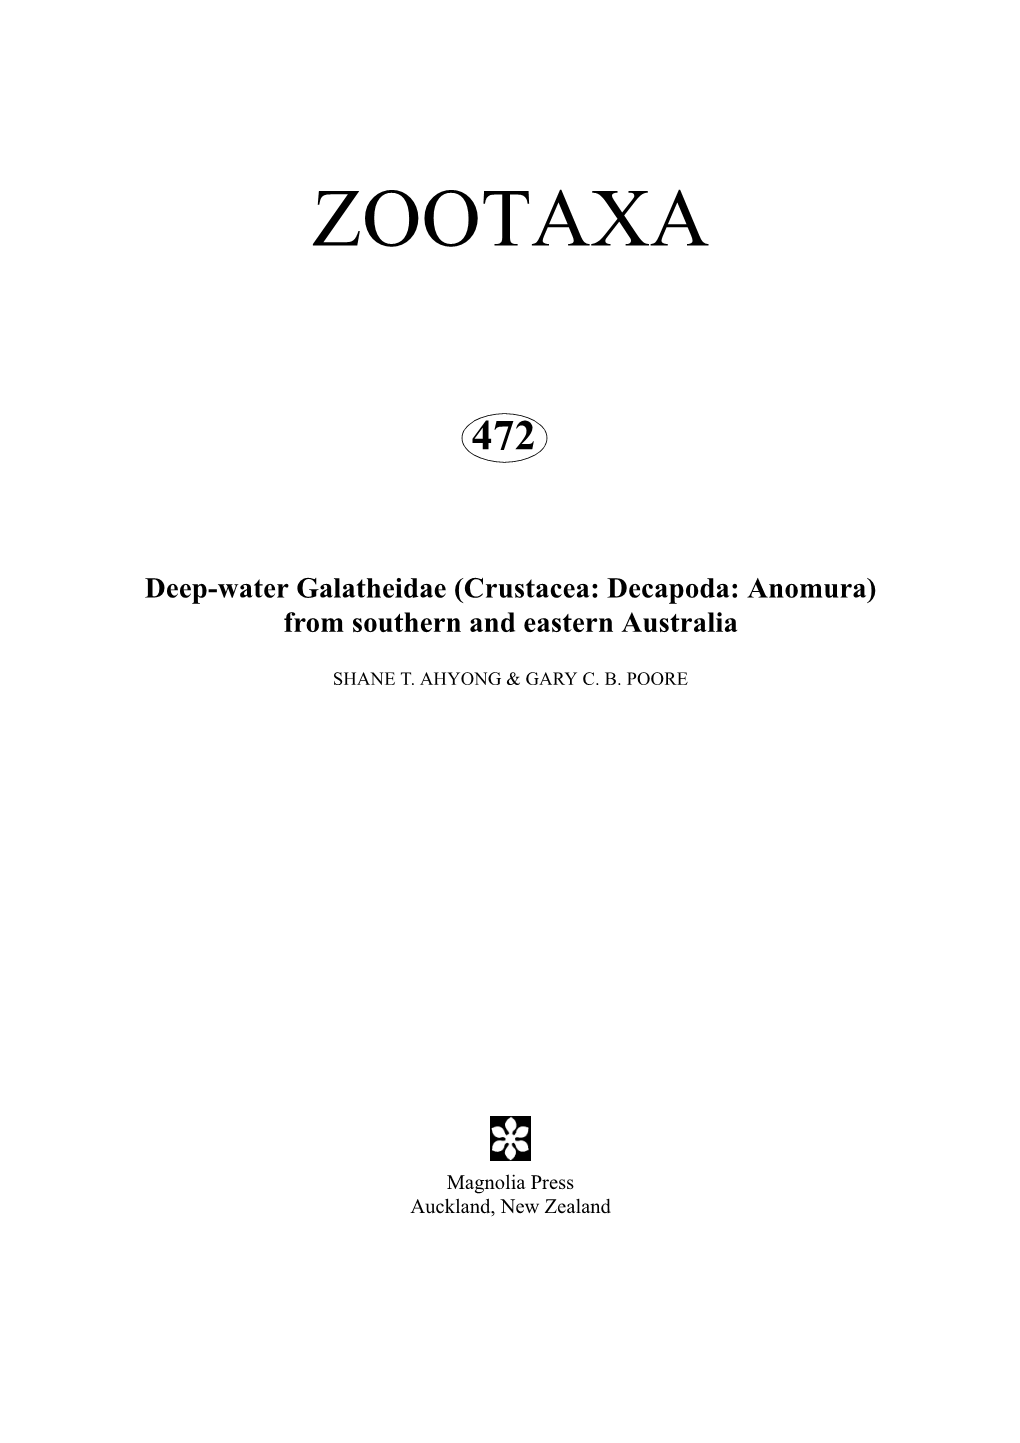 Zootaxa, Crustacea, Galatheidae